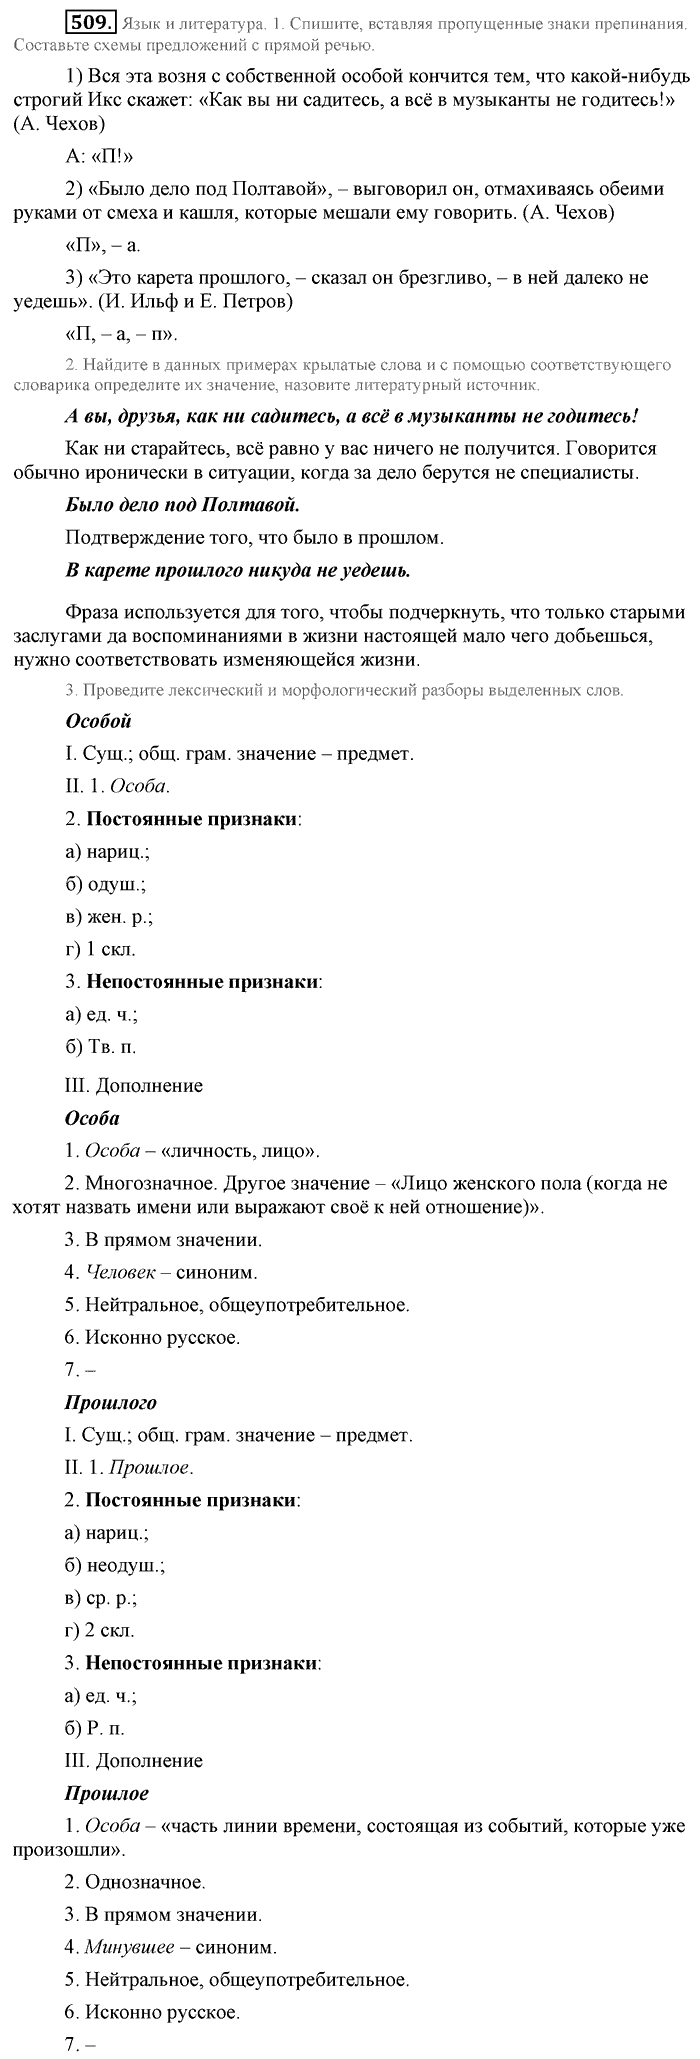 Синий учебник, 9 класс, Львова, Львов, 2012, задание: 509